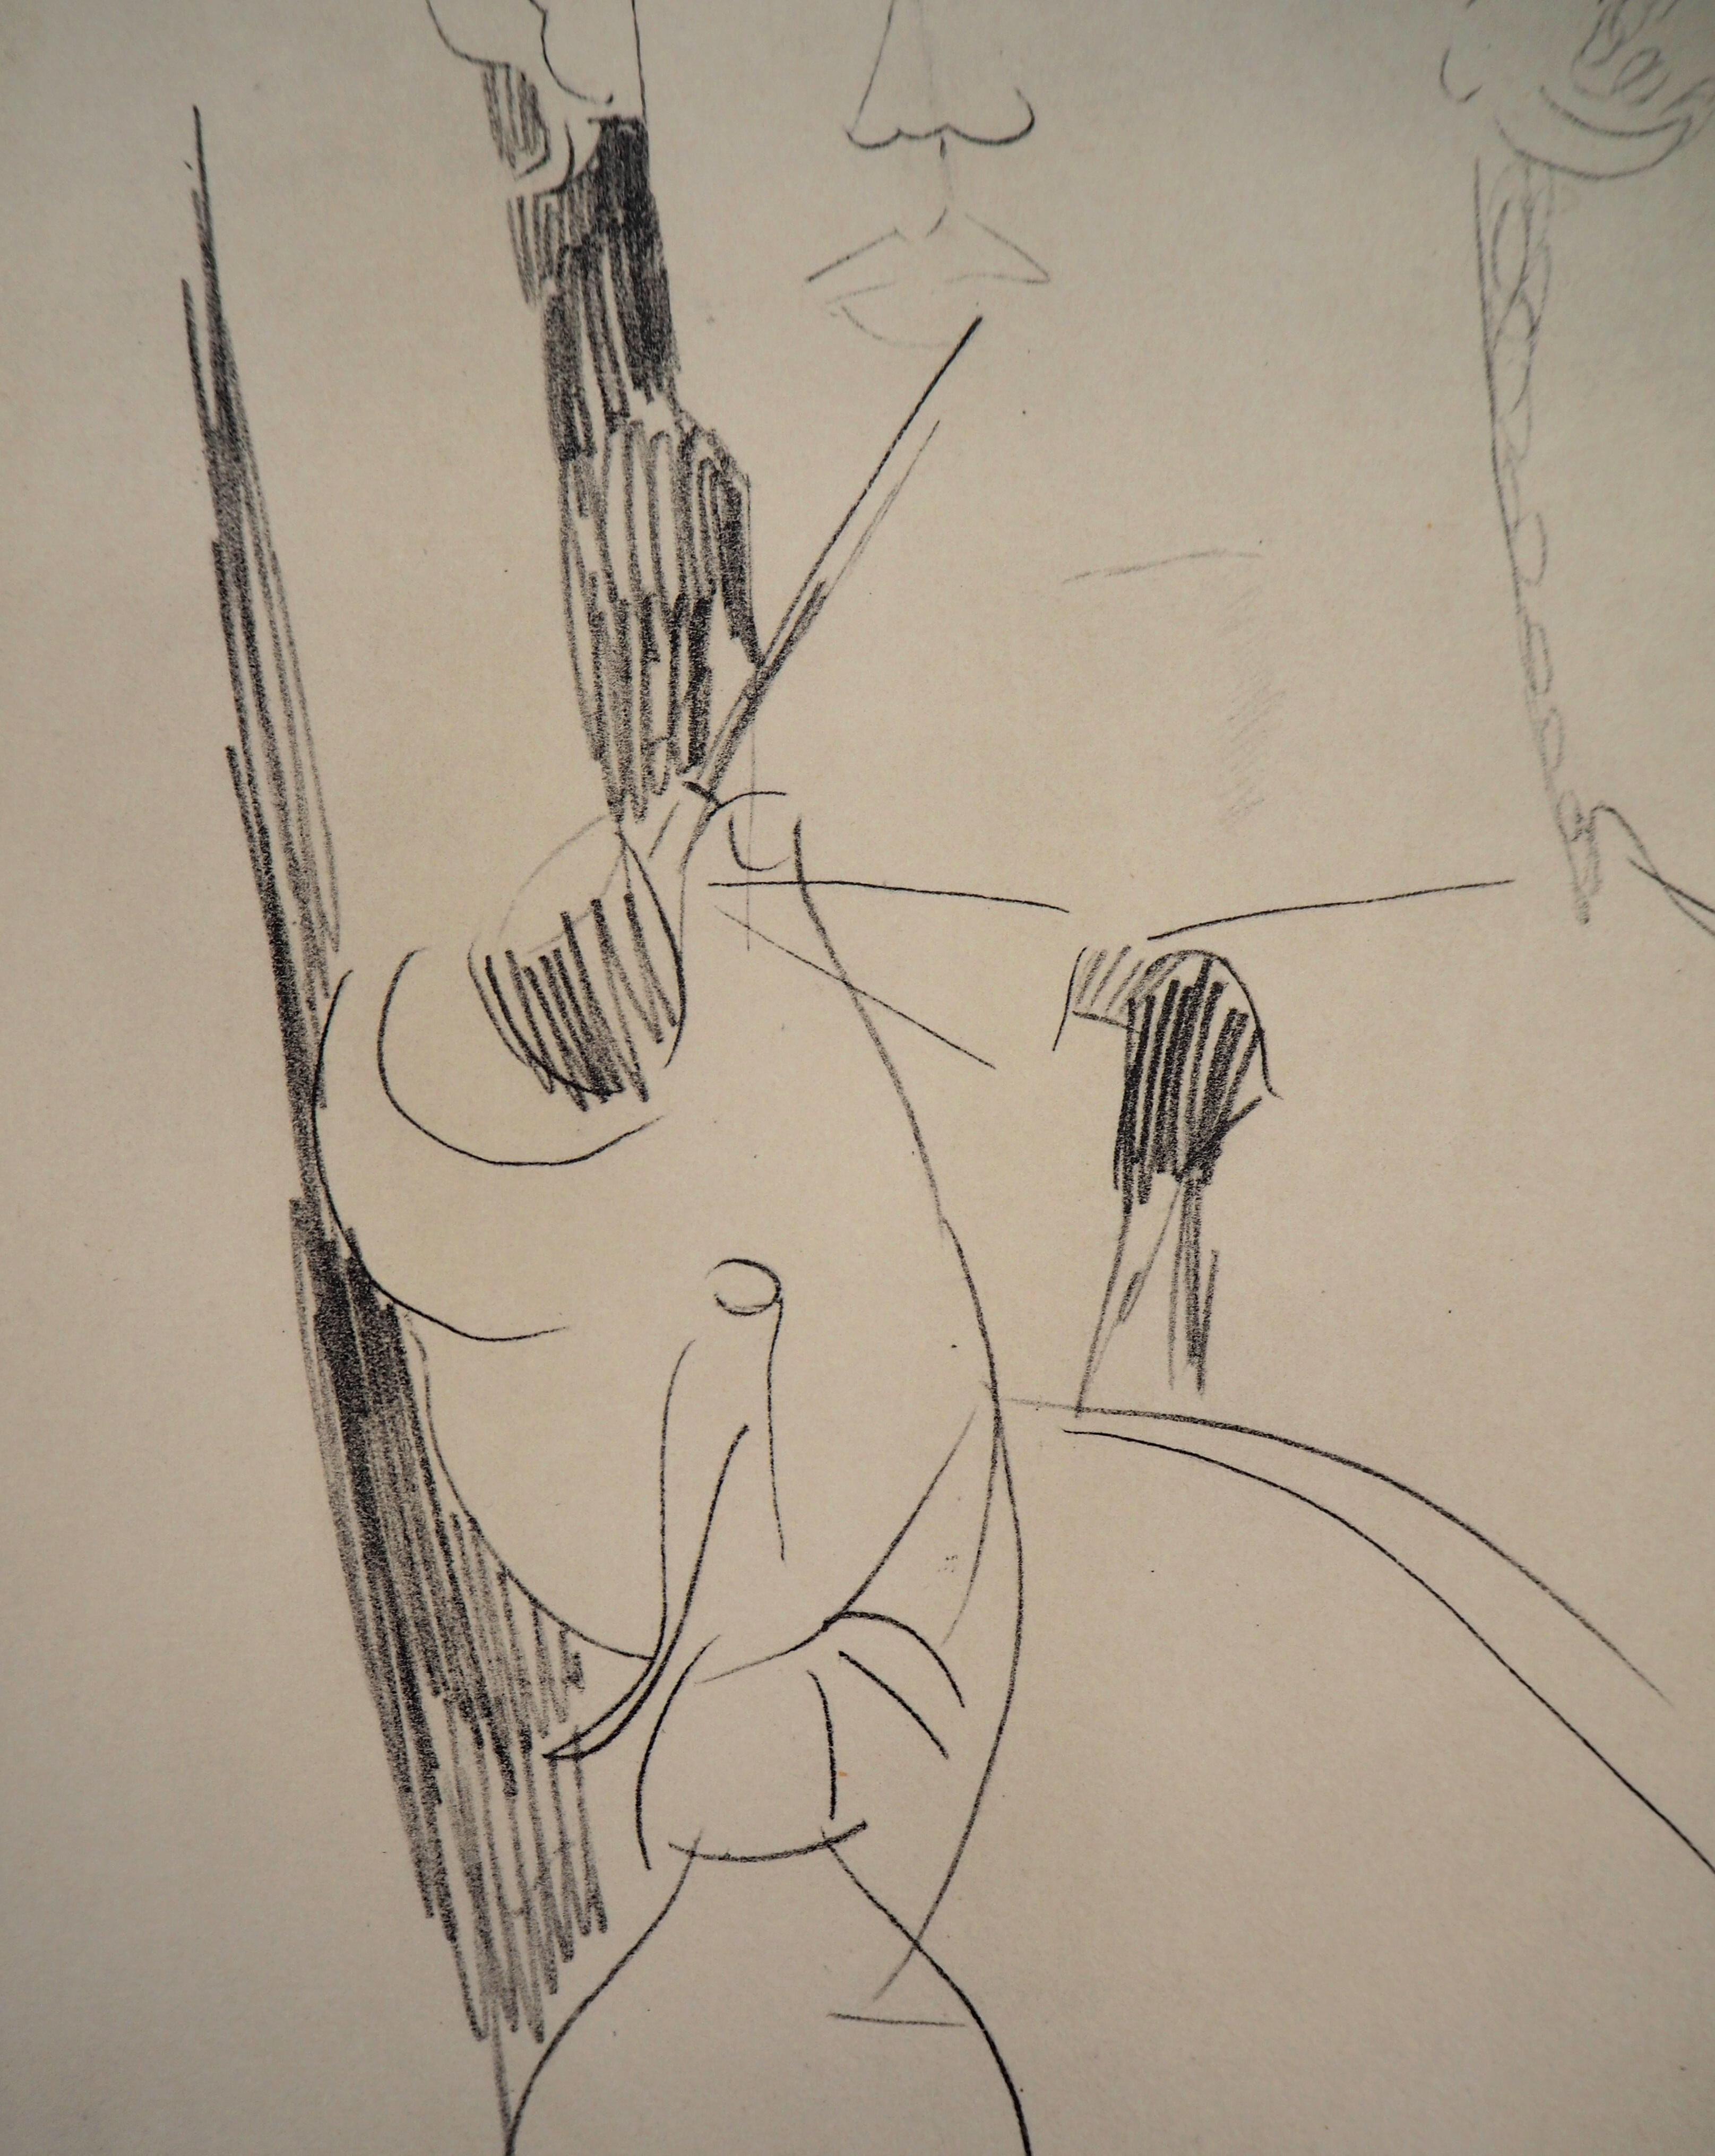 Amedeo MODIGLIANI (1884-1920) (après)
Vlaminck fumant la pipe

Lithographie d'après un dessin de l'artiste
Signé dans la plaque
Sur vélin d'Arches 48 x 36 cm (c. 19 x 14,2 in)
Limité à 300 ex.

Information : Extrait du portfolio 